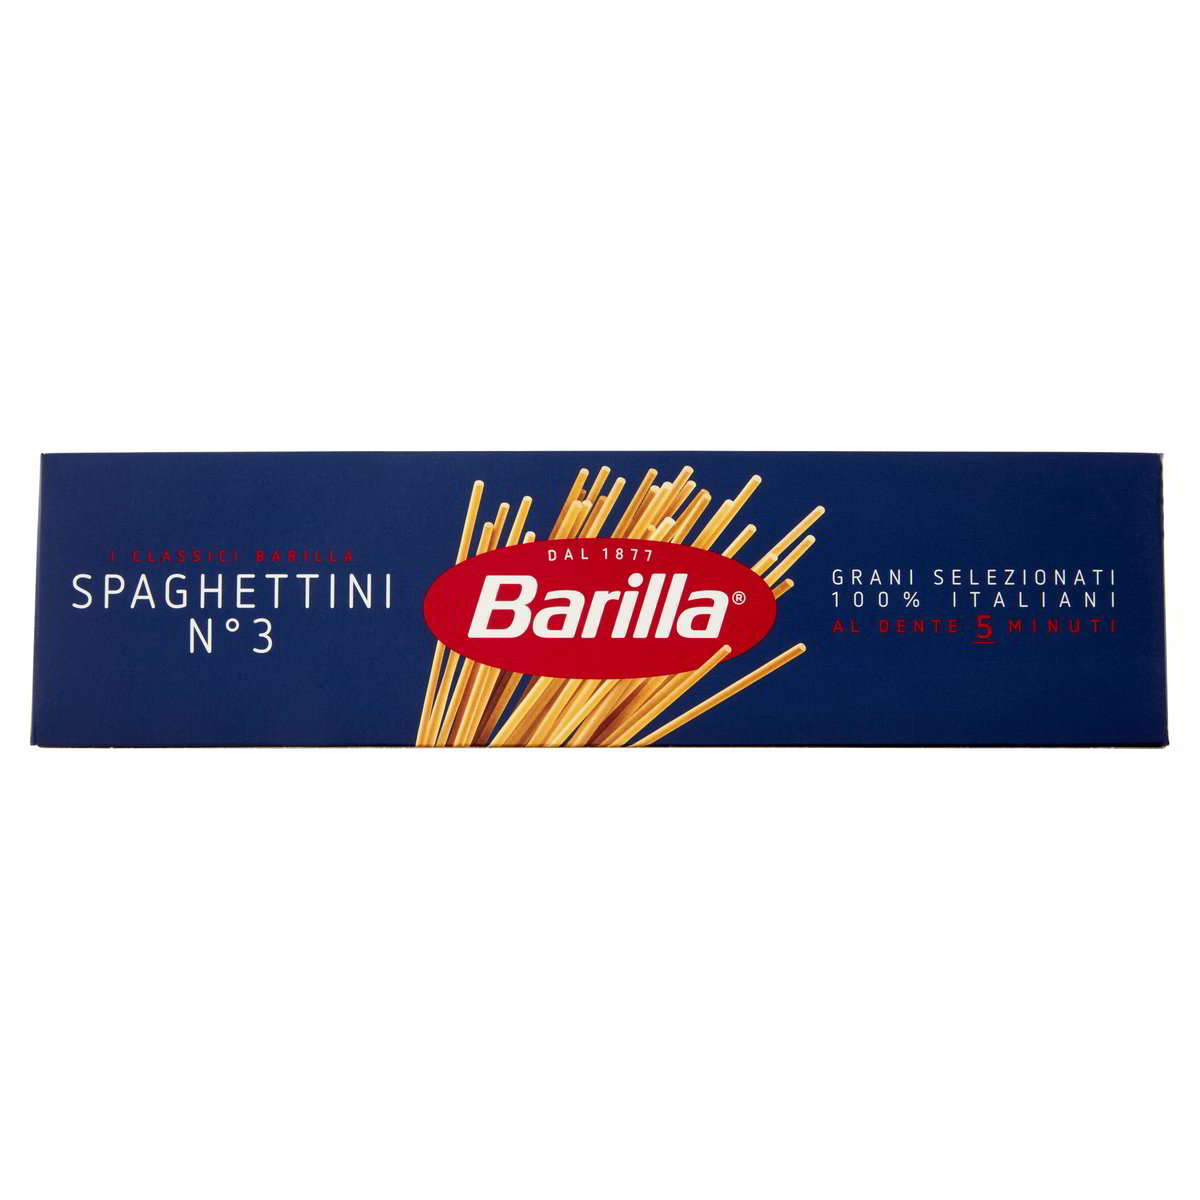 Spaghettini n.3